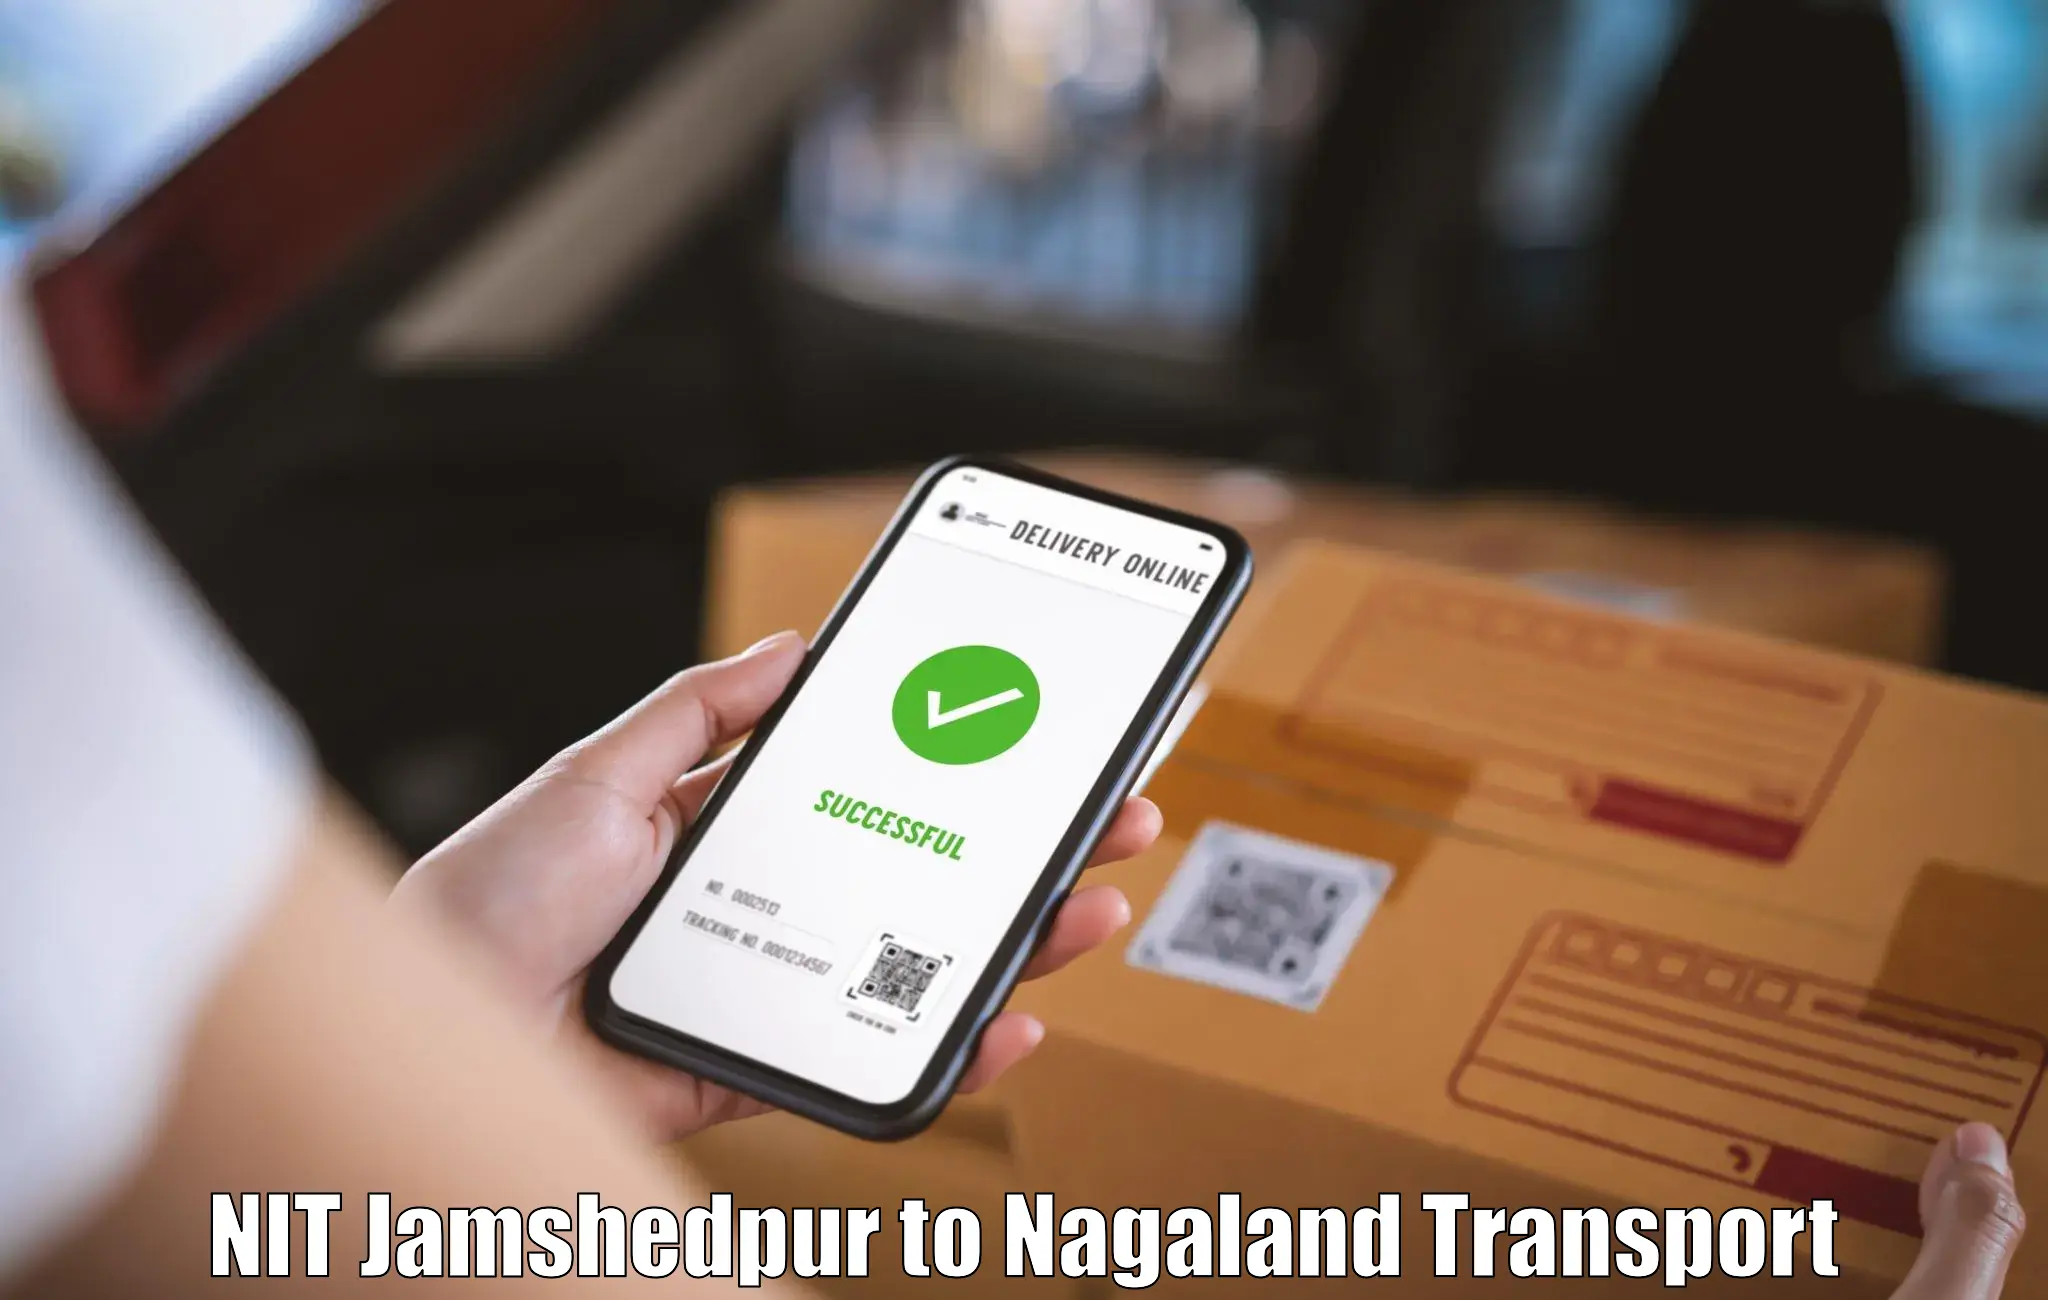 Logistics transportation services NIT Jamshedpur to Nagaland